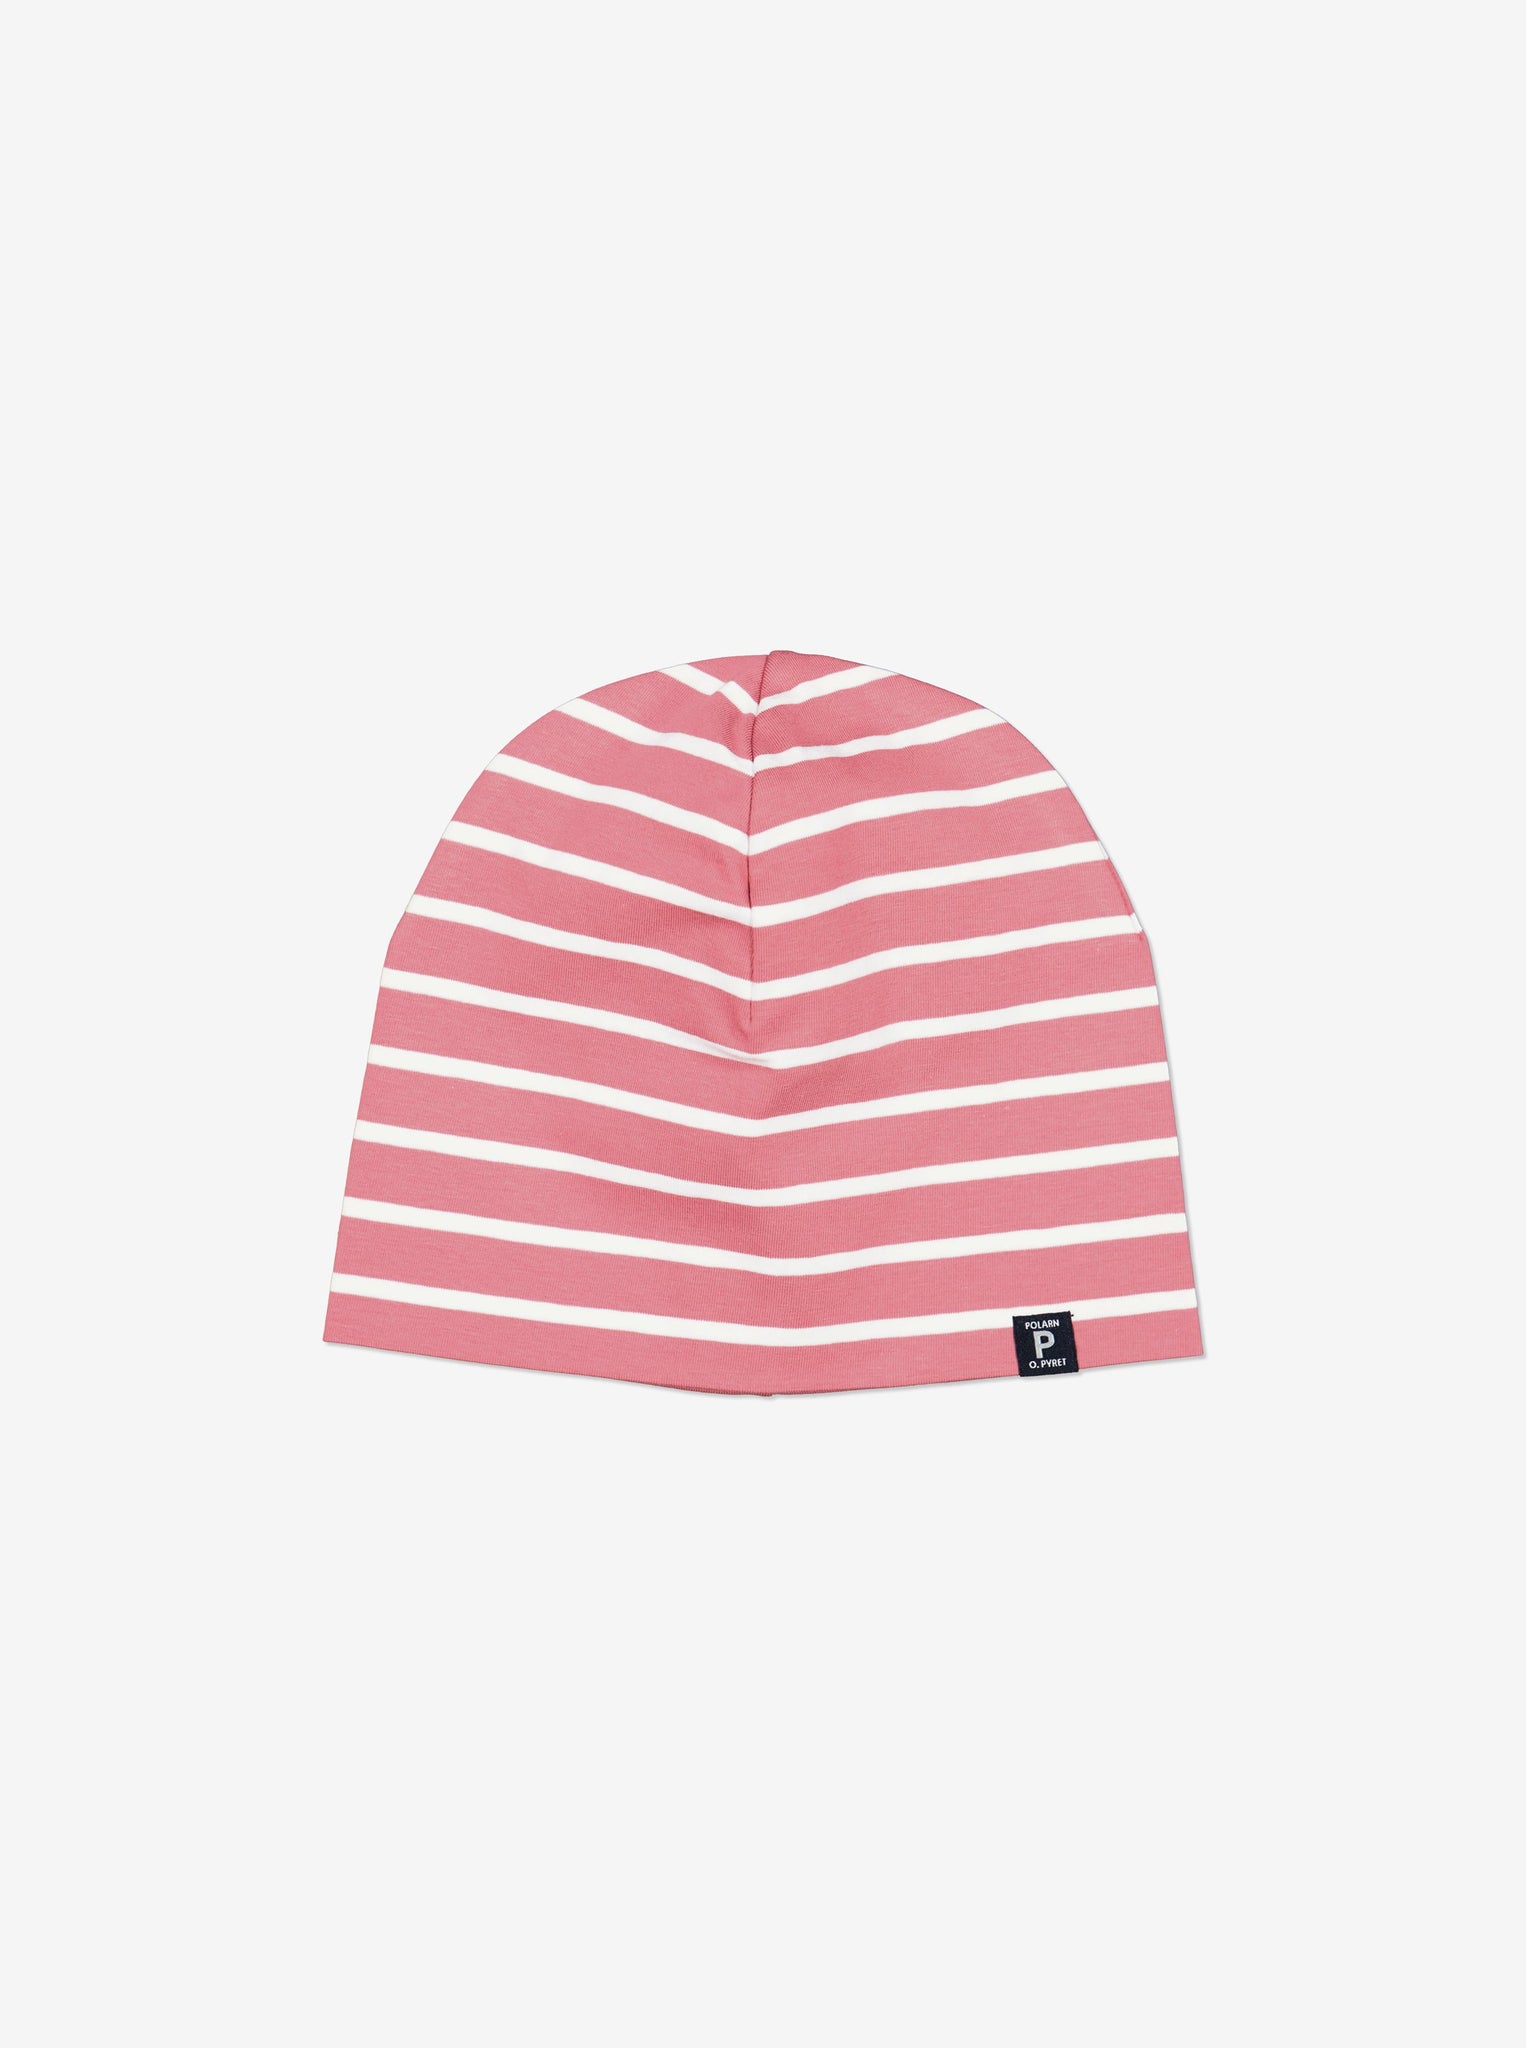 Striped Pink Kids Beanie Hat from Polarn O. Pyret Kidswear. Warm kids beanie